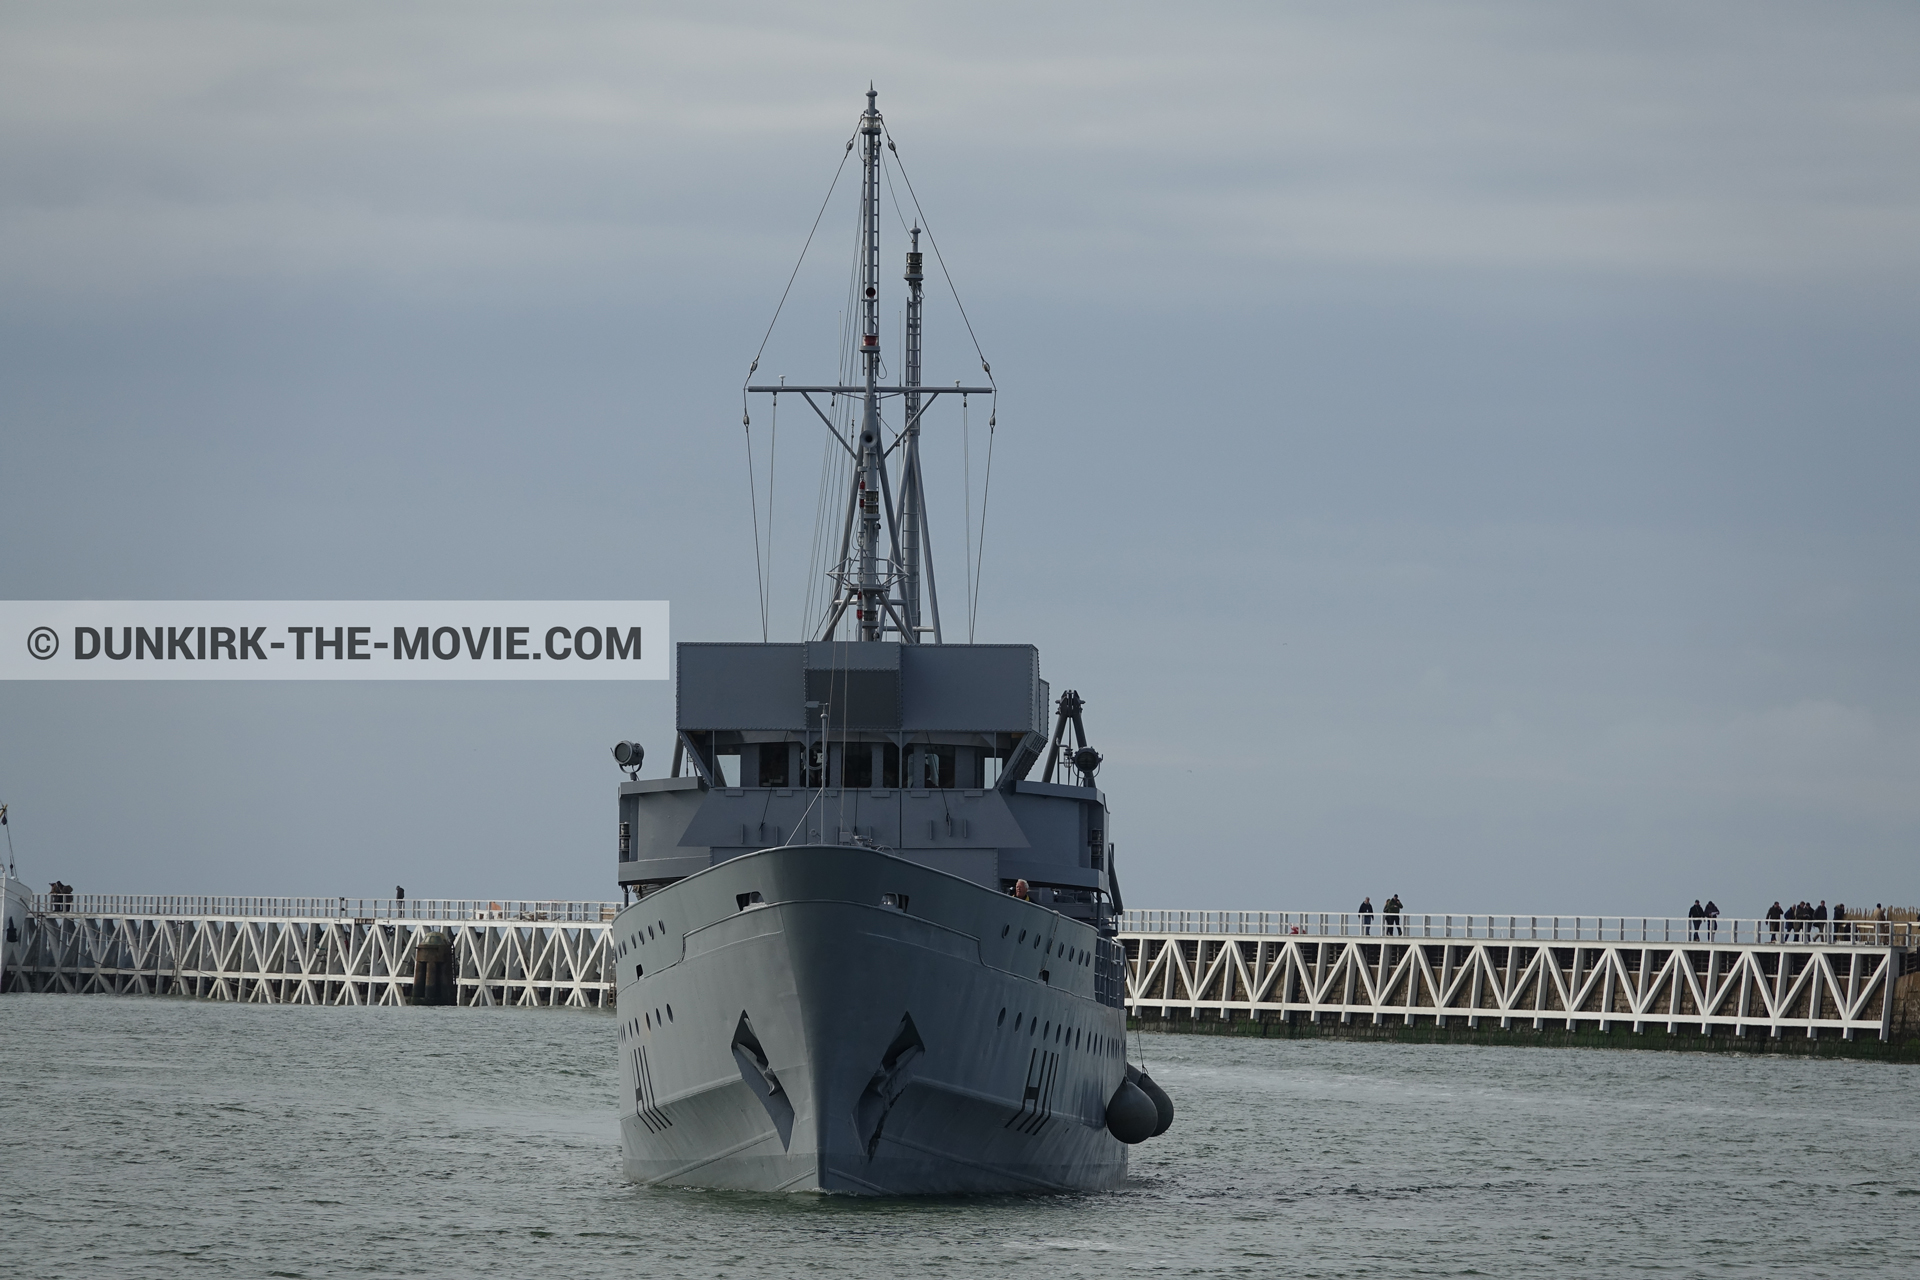 Fotos con cielo gris, H11 - MLV Castor, muelle del ESTE, mares calma,  durante el rodaje de la película Dunkerque de Nolan